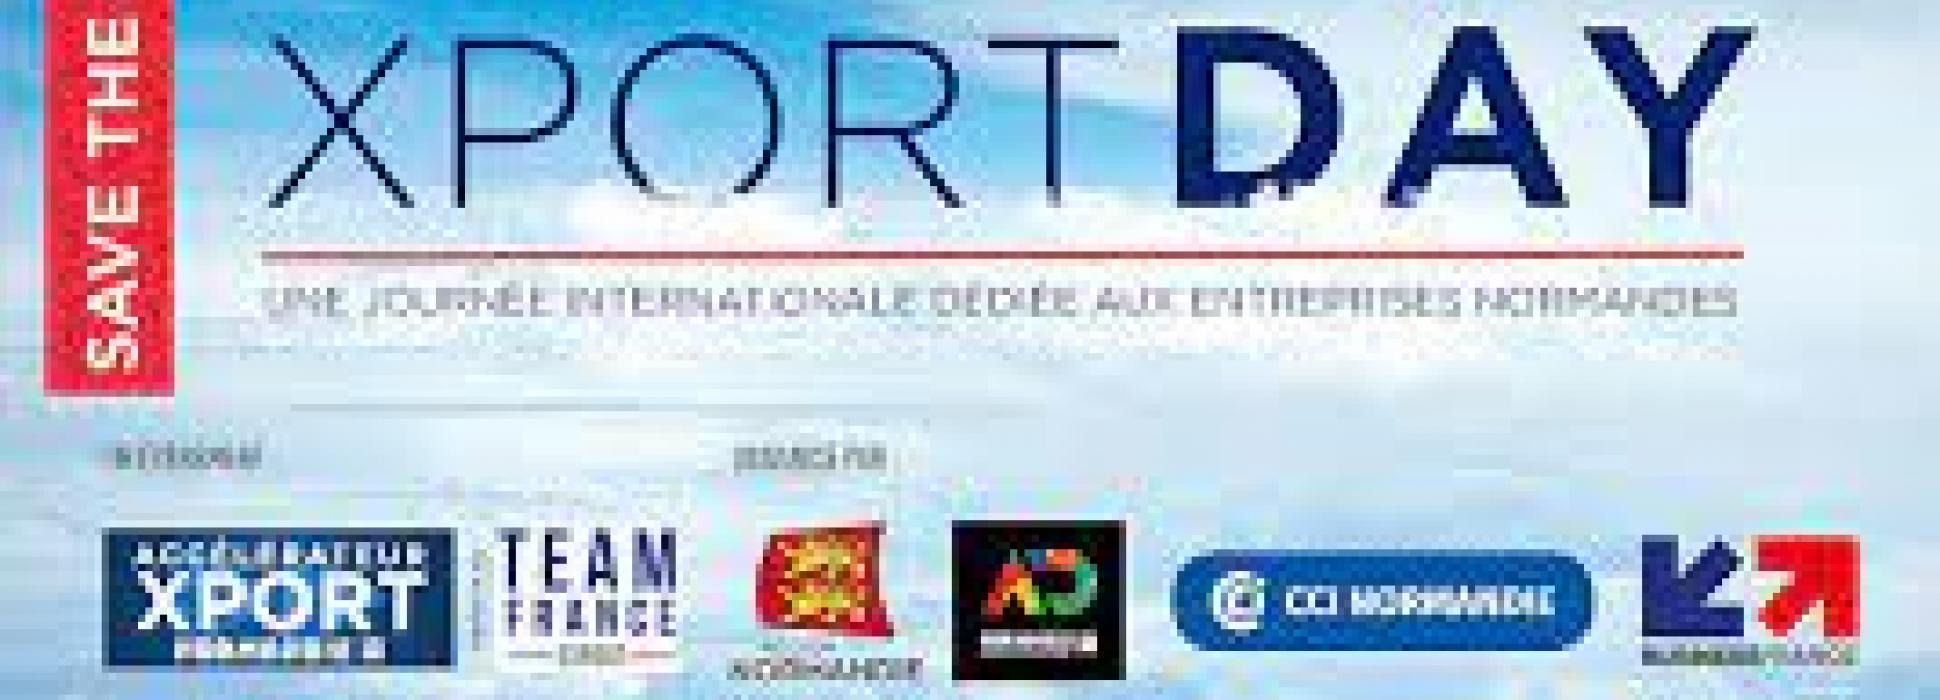 L’Xport Day 2023 aura lieu le 28 juin à Caen